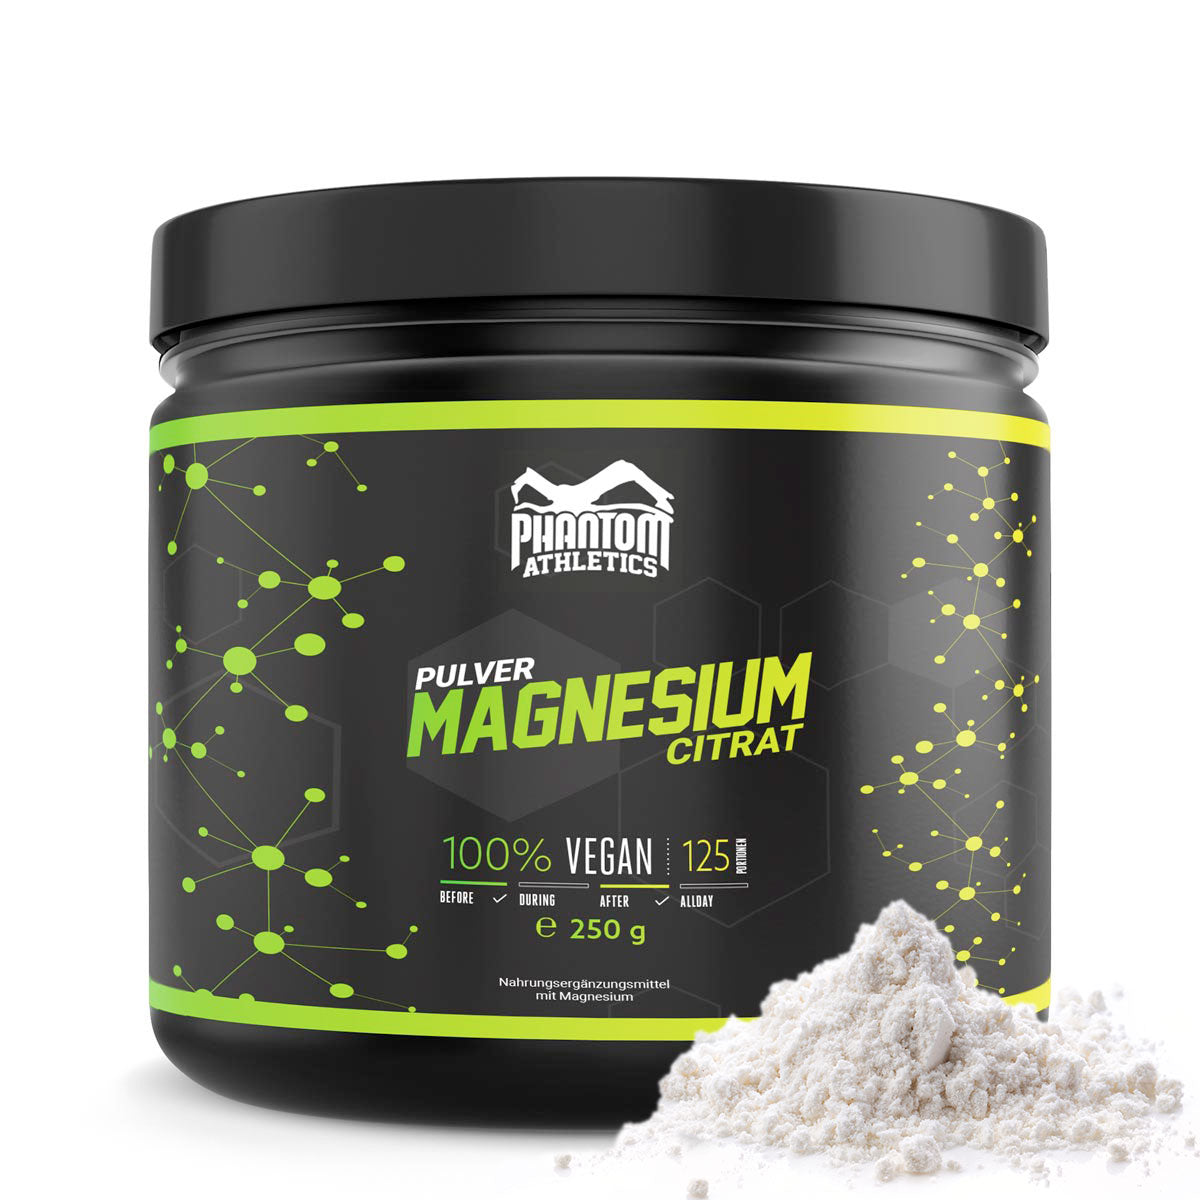 Phantom Magnesium Citrate for bedre regenerering i kampsport.